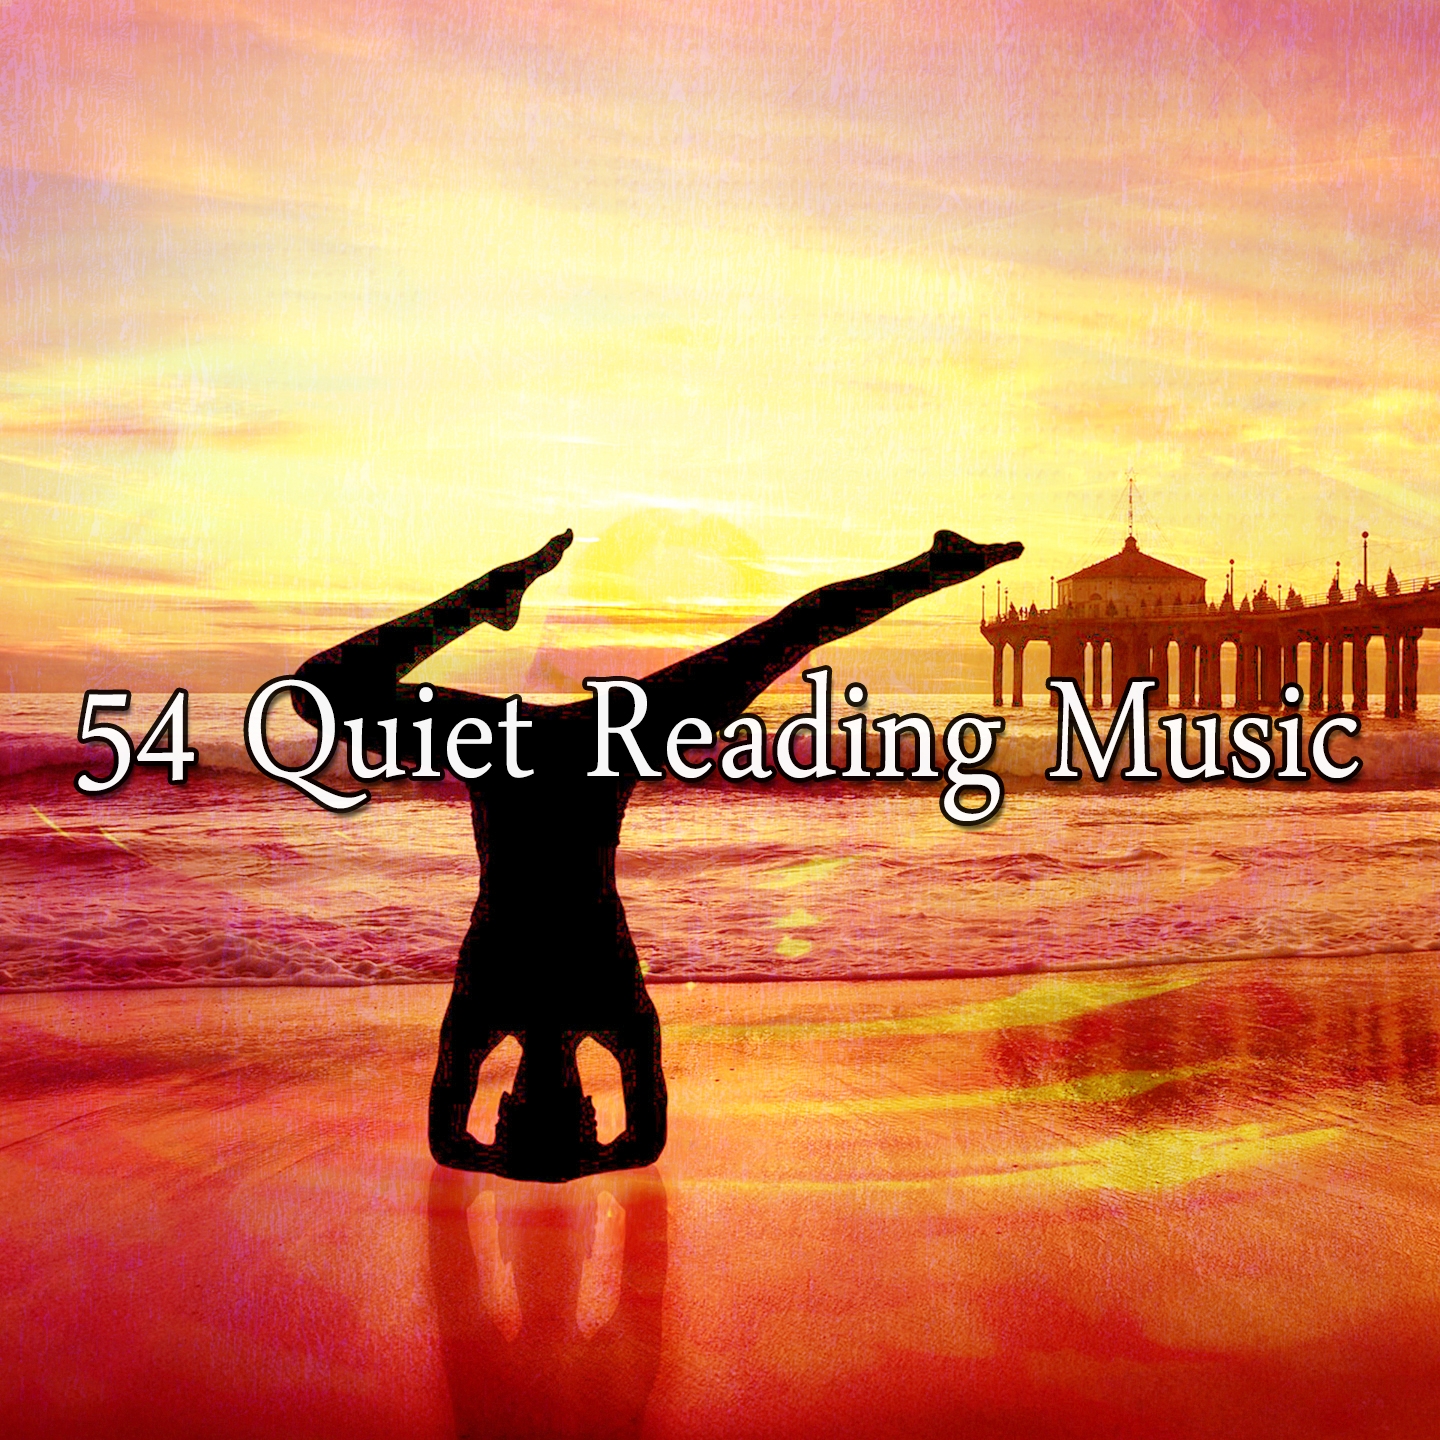 54 Quiet Reading Music